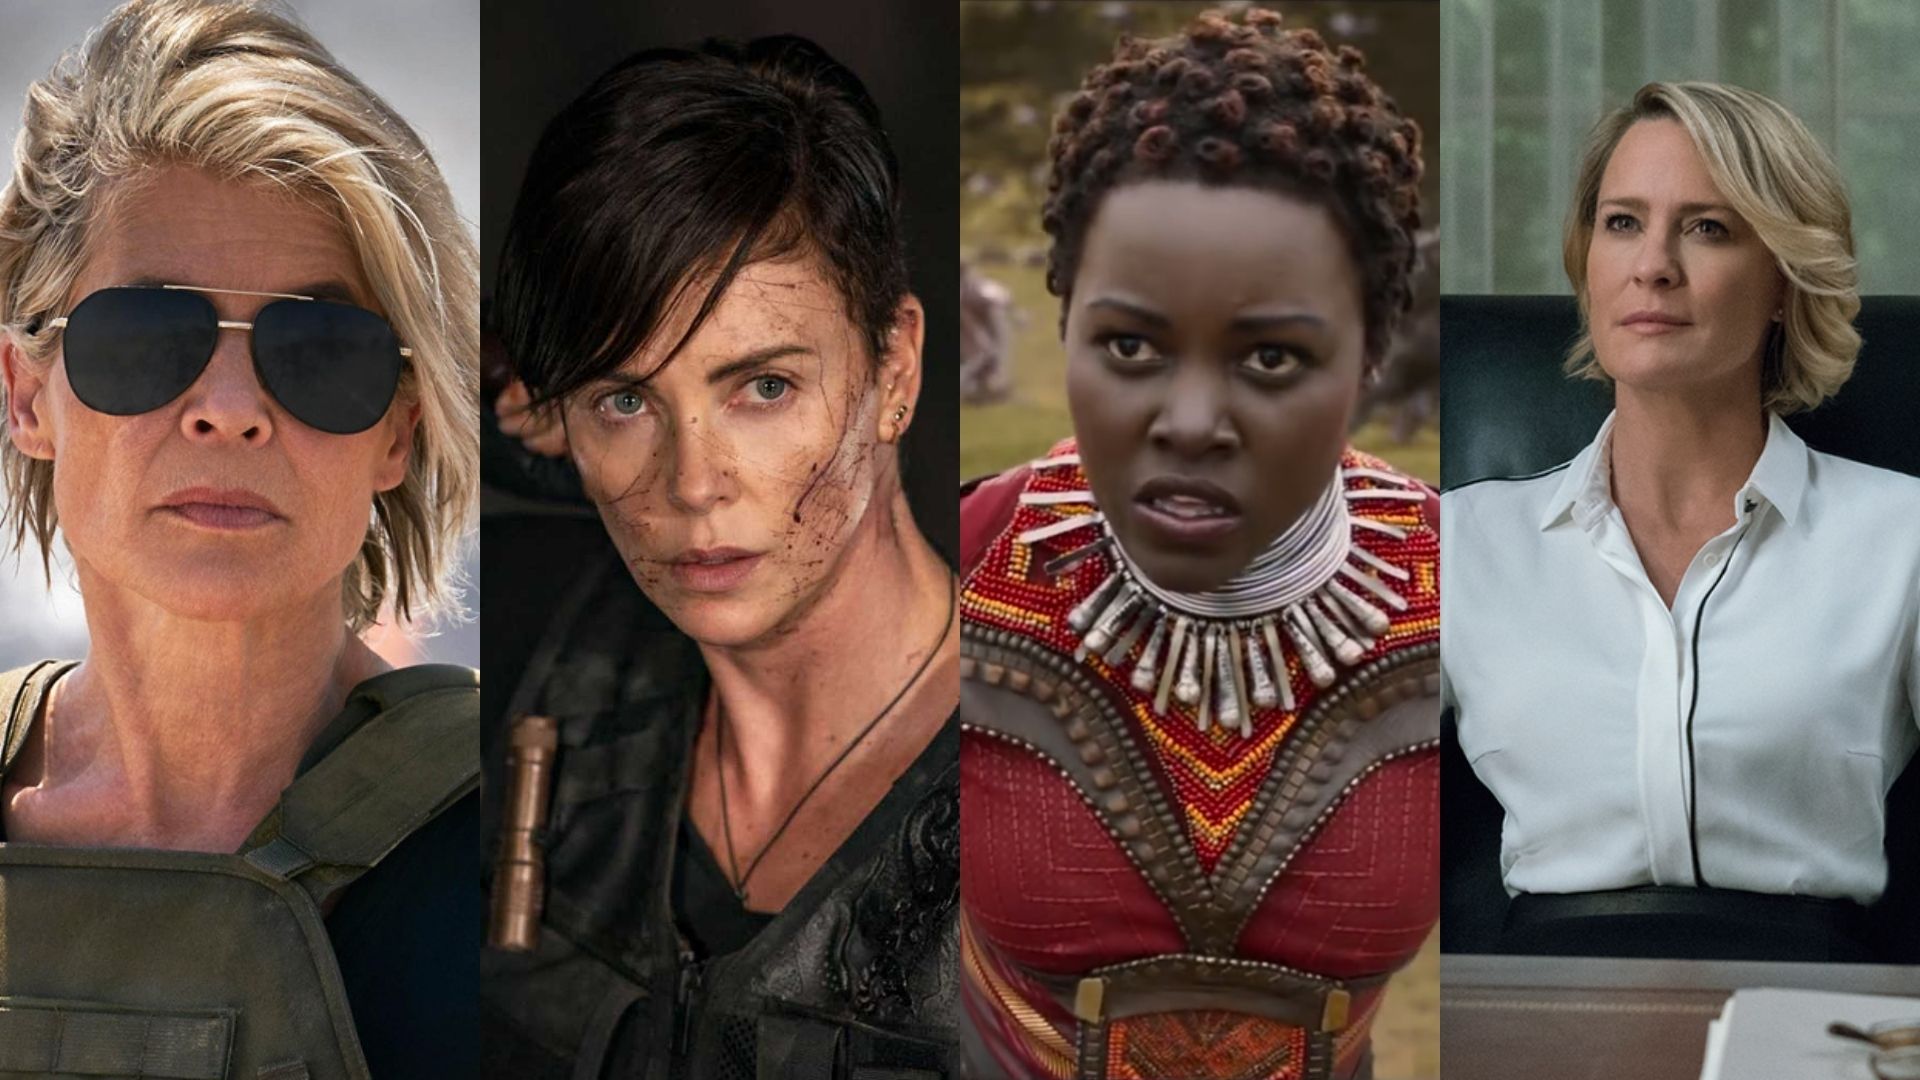 Melhores personagens femininos de 2019 - Série B - Página 2